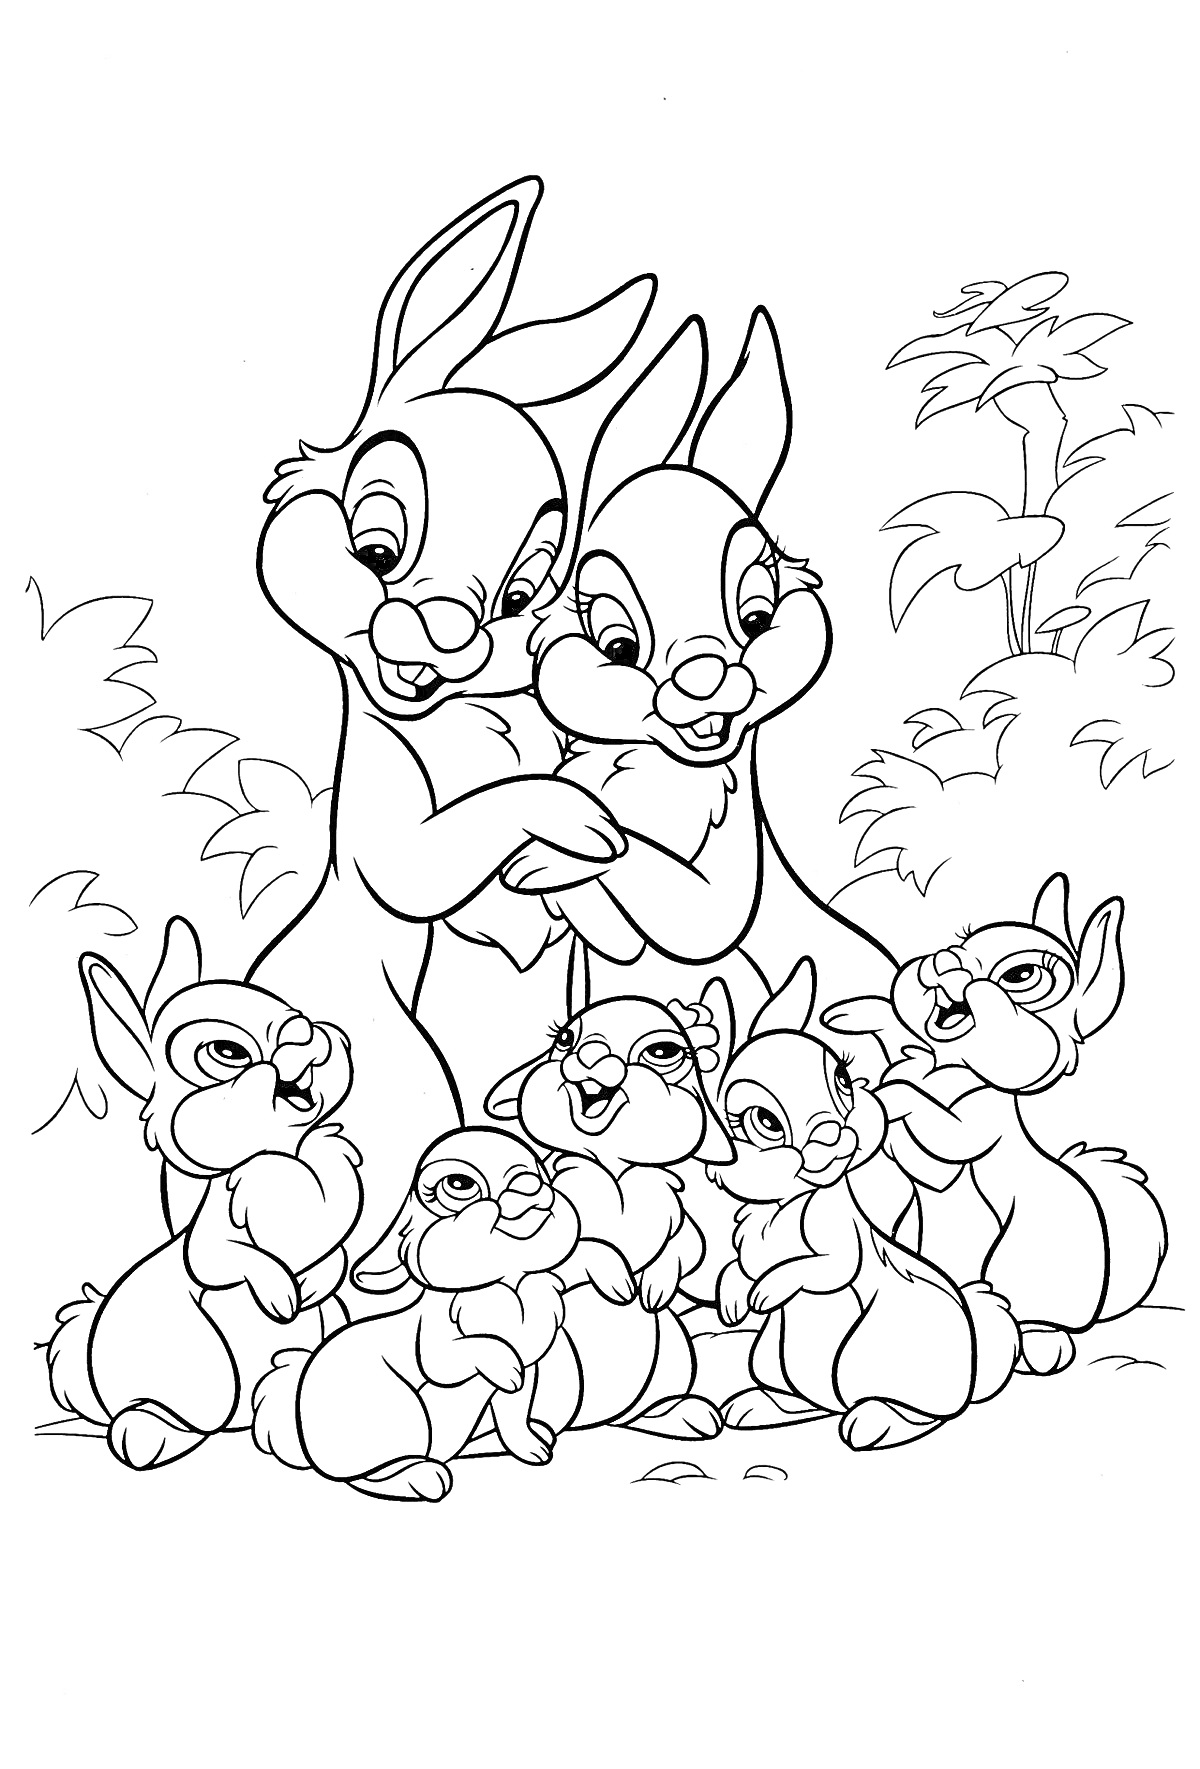 Две взрослые кролики обнимаются, окружённые шестью маленькими крольчатами на фоне кустов и деревьев.